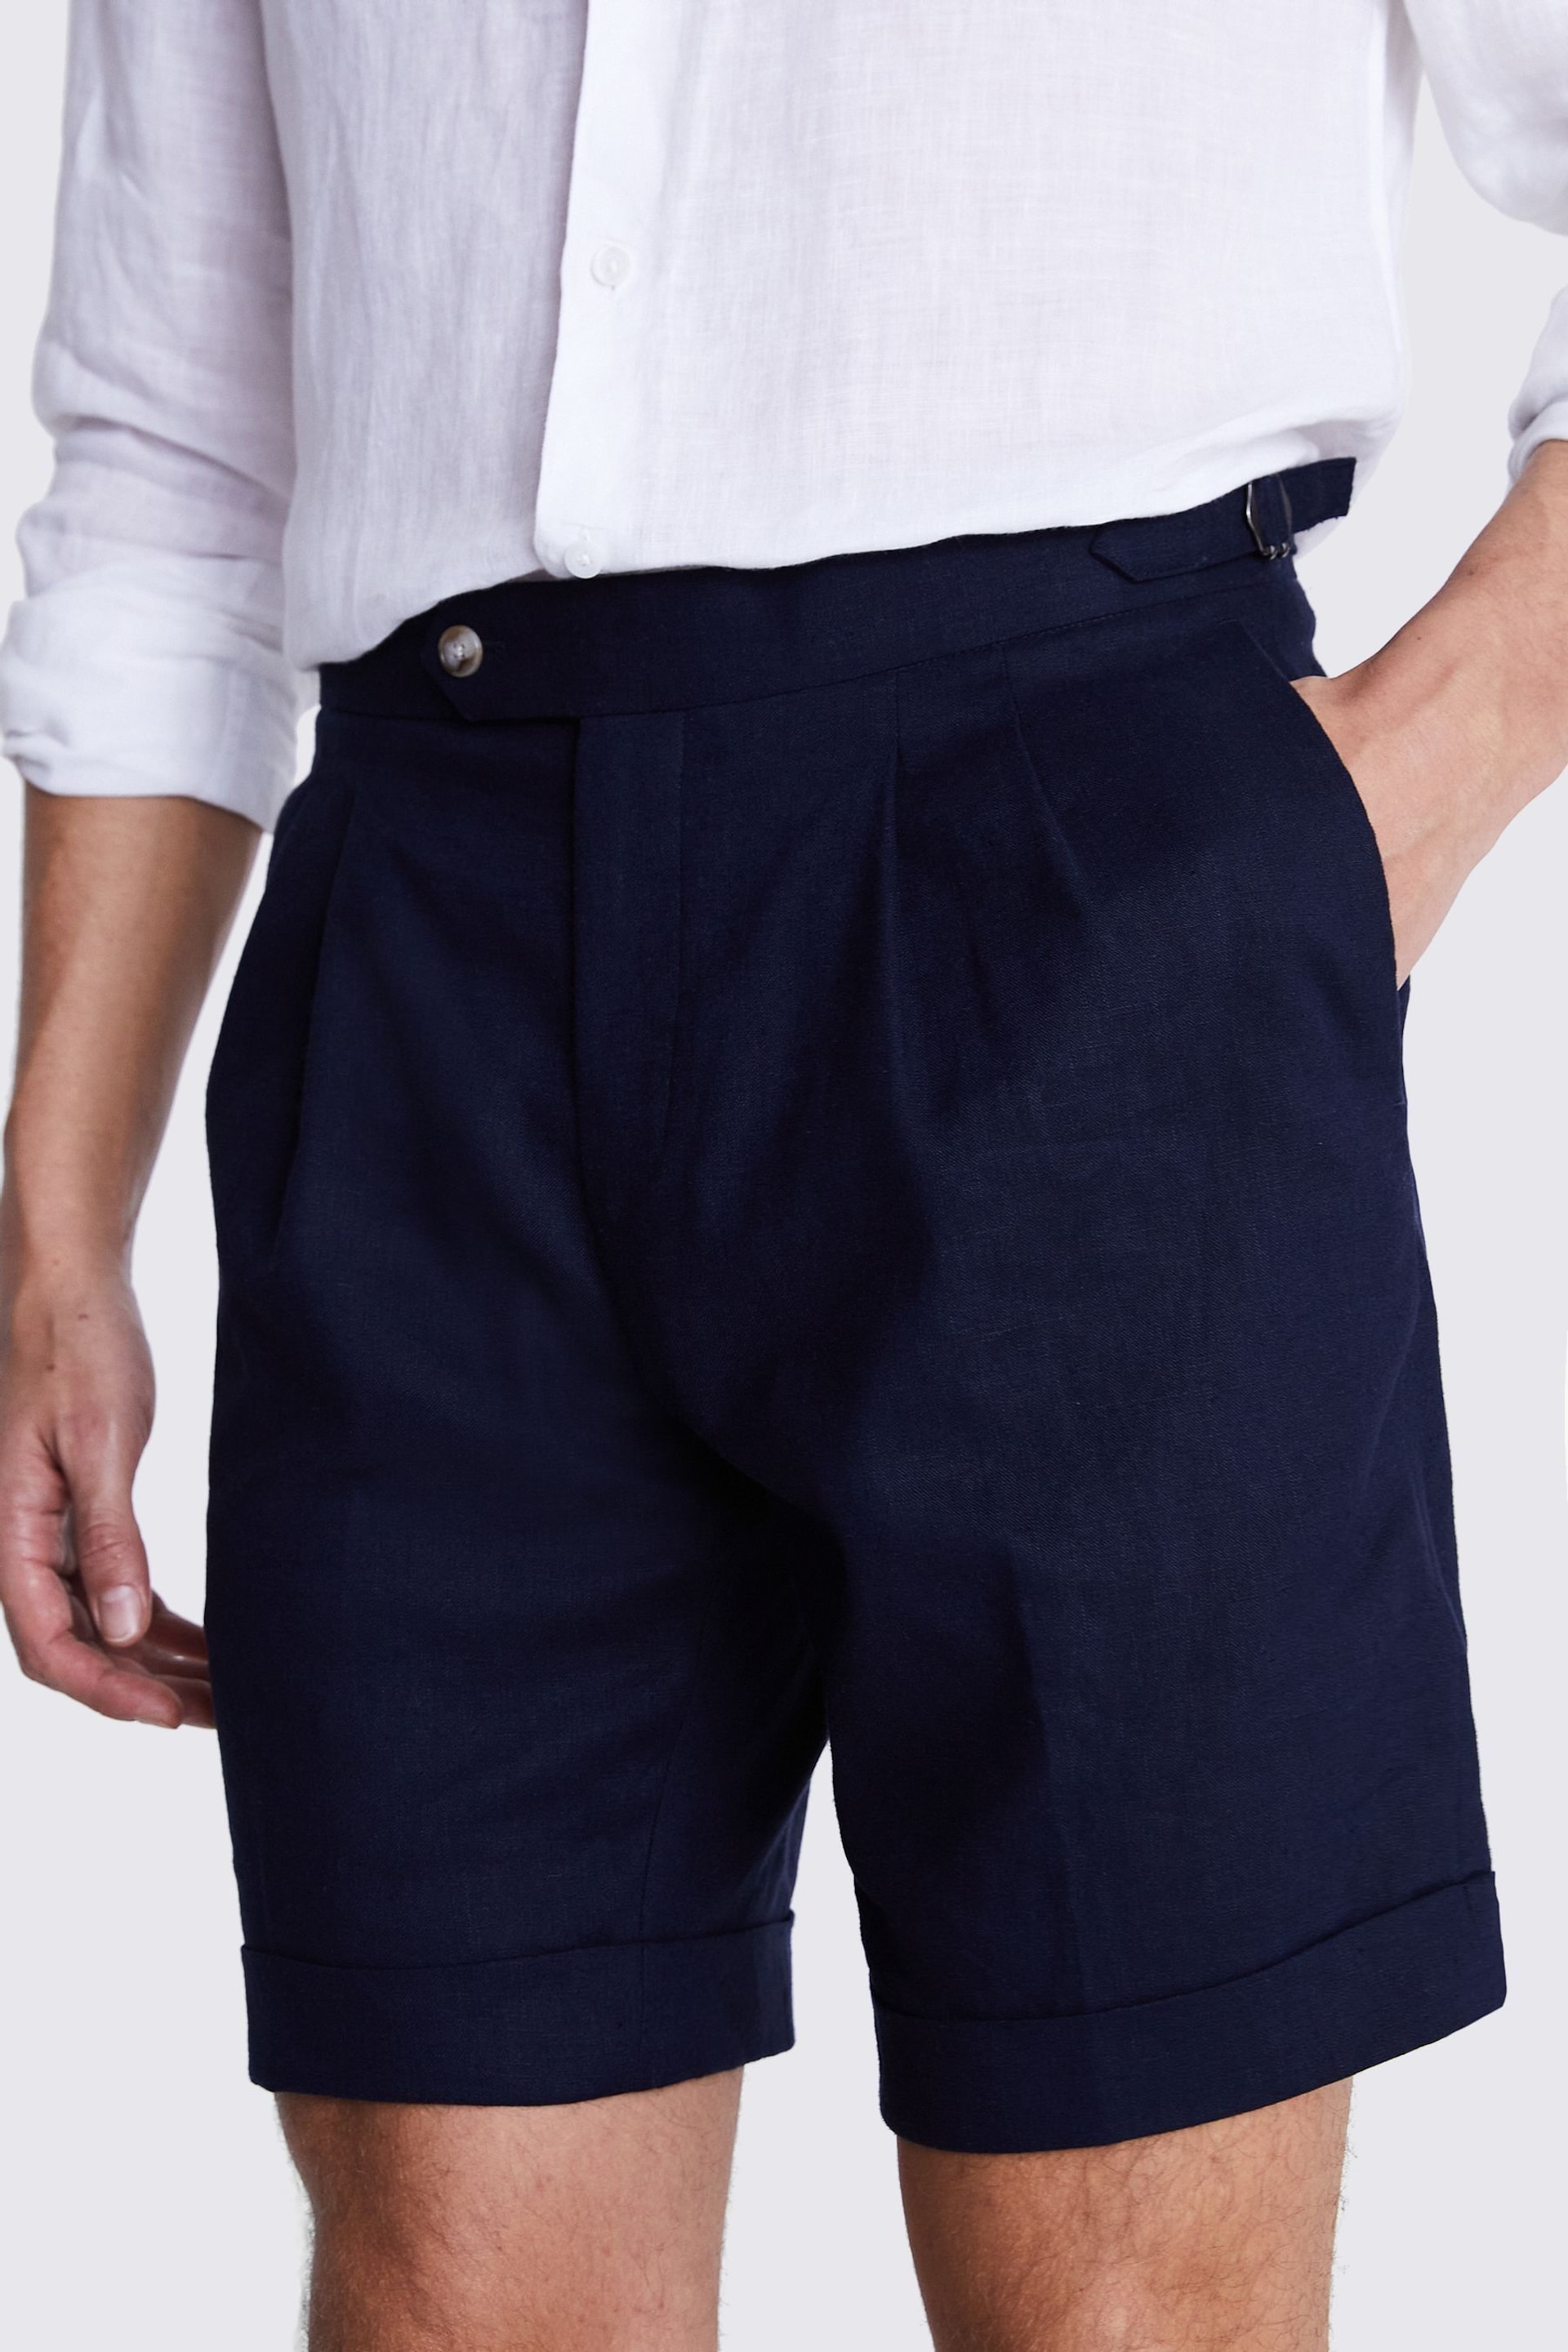 MOSS Blue Matte Linen Shorts - Image 3 of 3